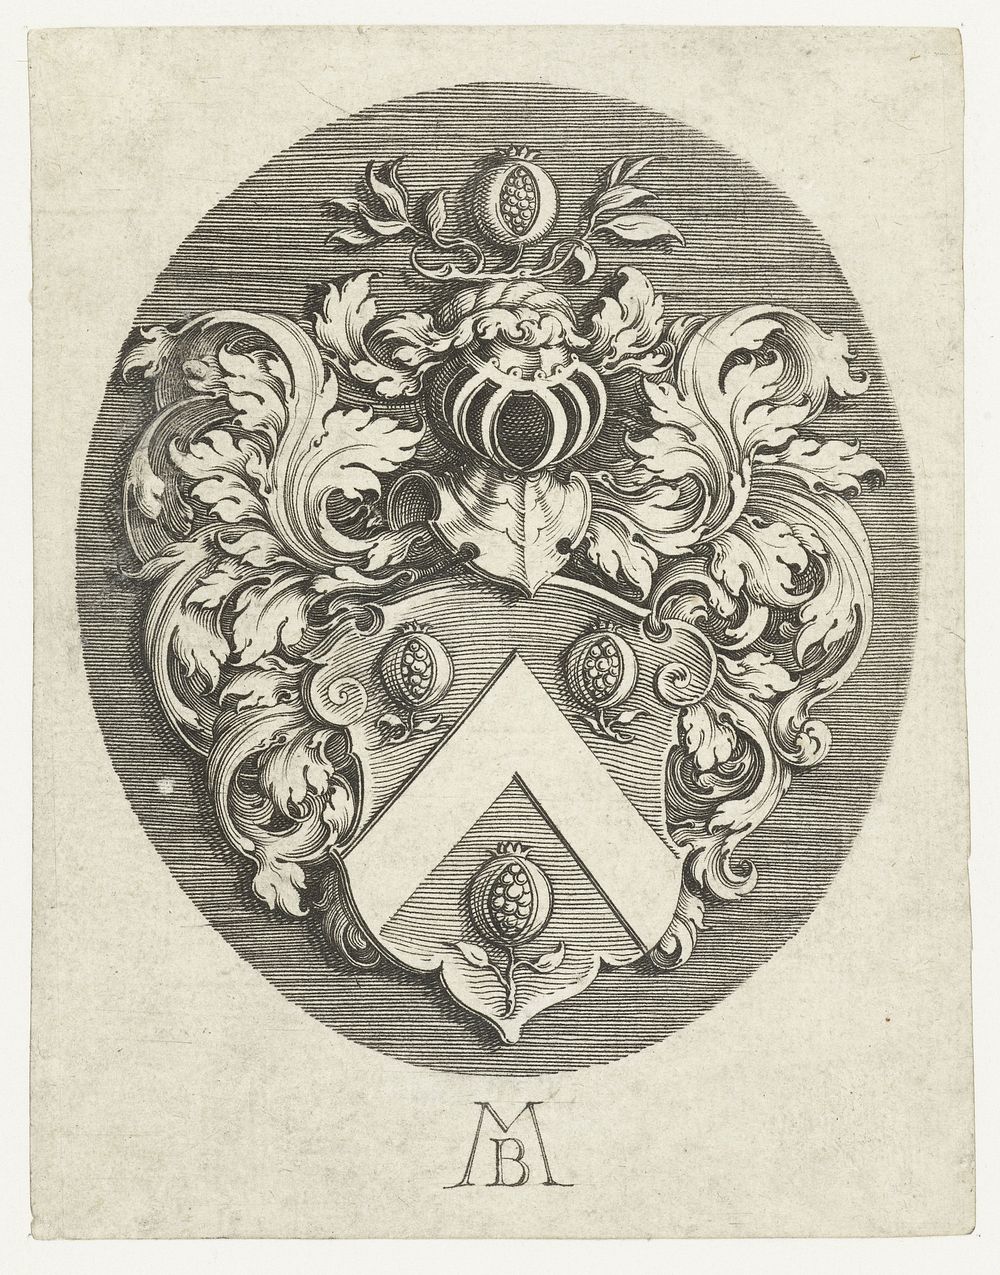 Onbekend wapenschild in ovaal (c. 1611 - c. 1625) by Michiel le Blon, Michiel le Blon and Michiel le Blon